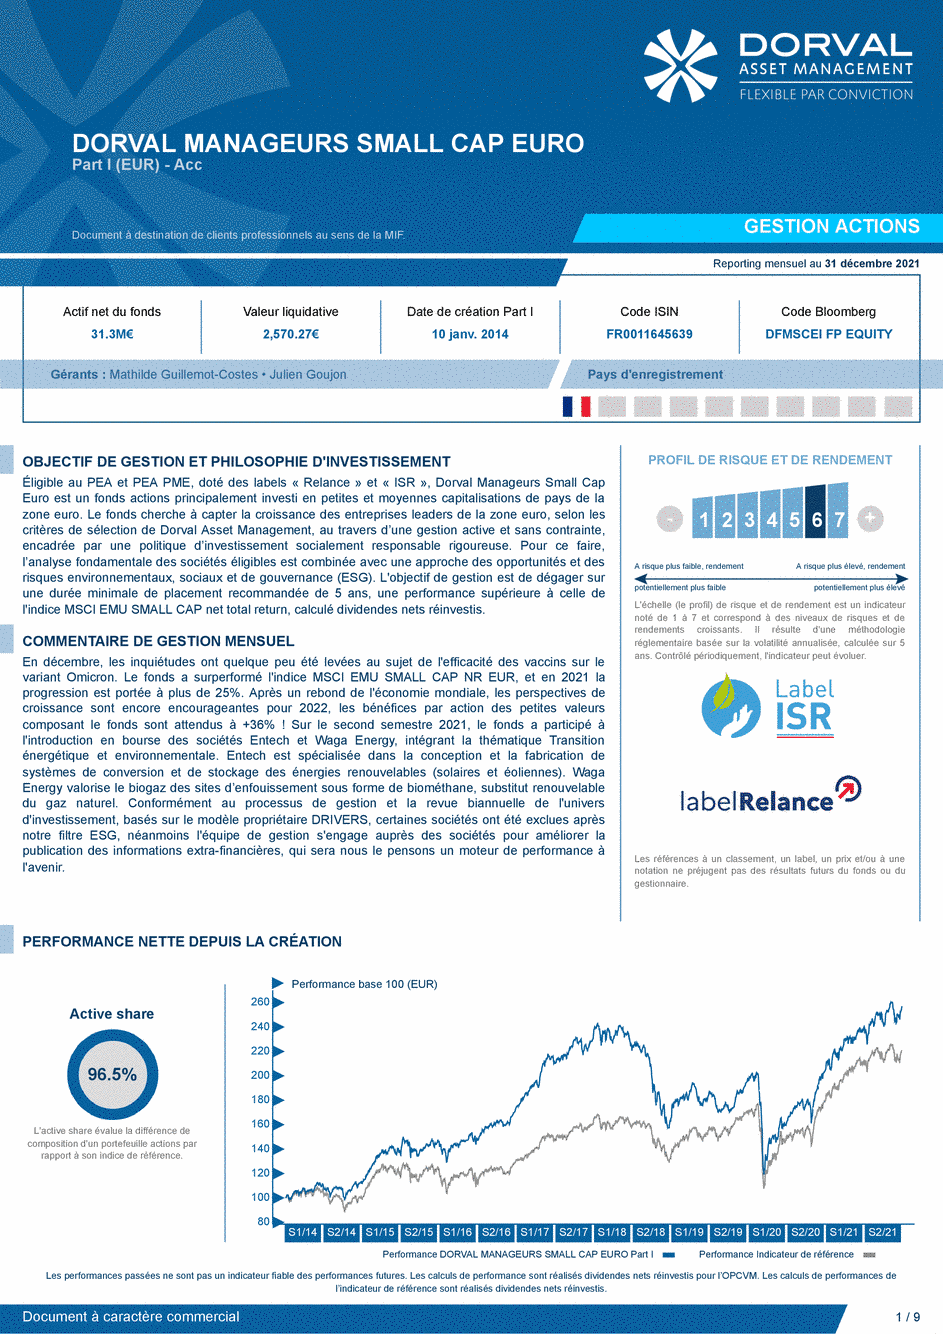 Reporting DORVAL MANAGEURS SMALL CAP EURO Part I - 31/12/2021 - Français